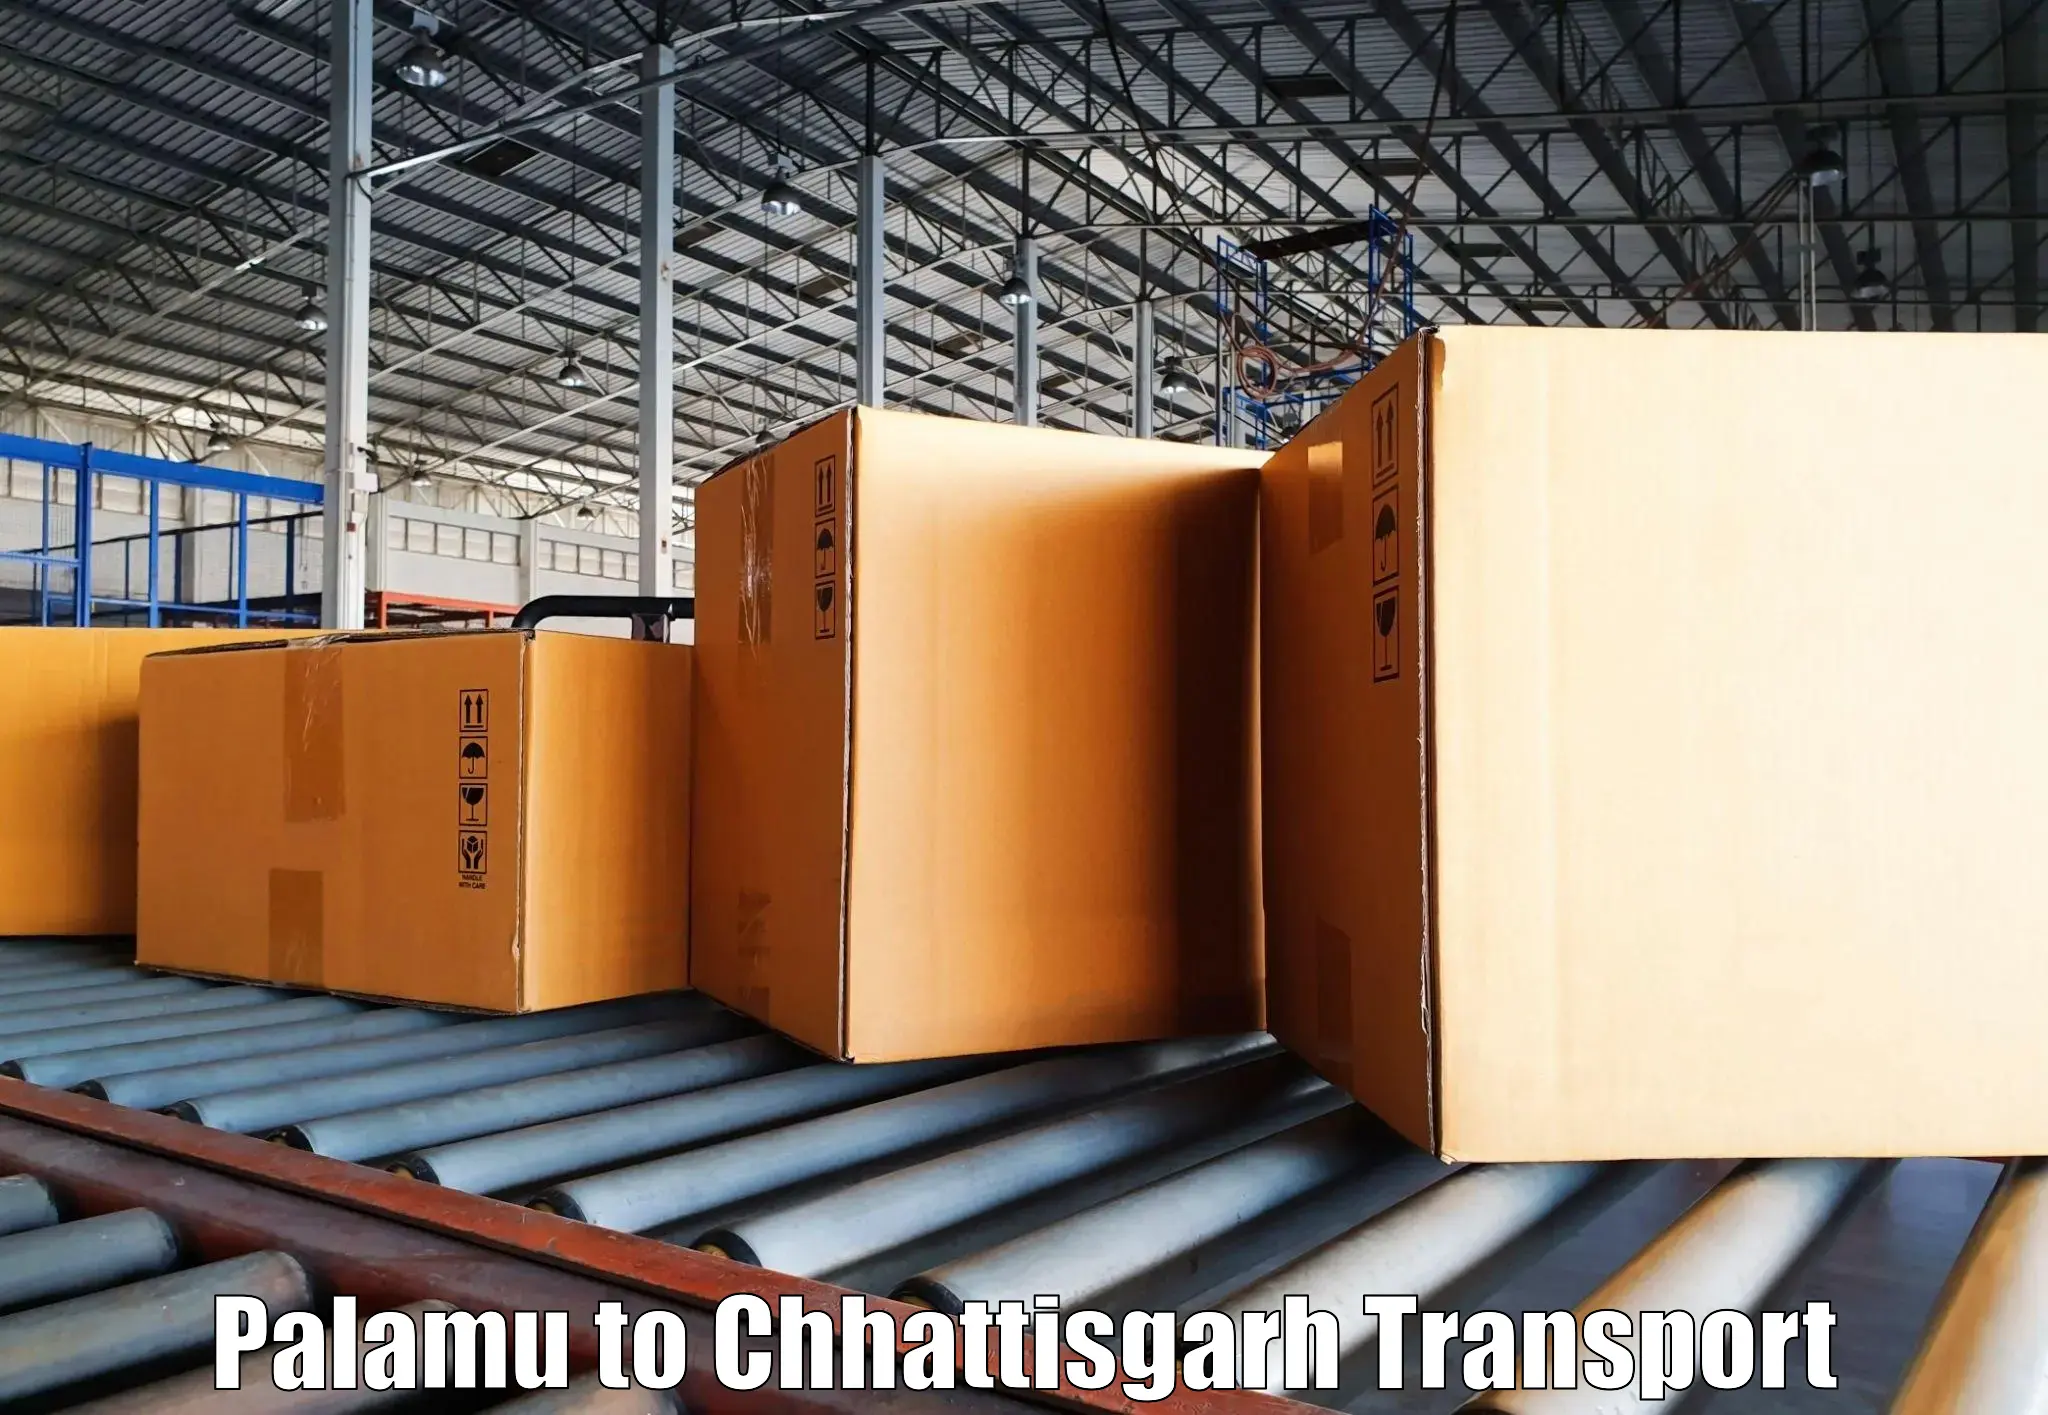 Cycle transportation service Palamu to Patna Chhattisgarh